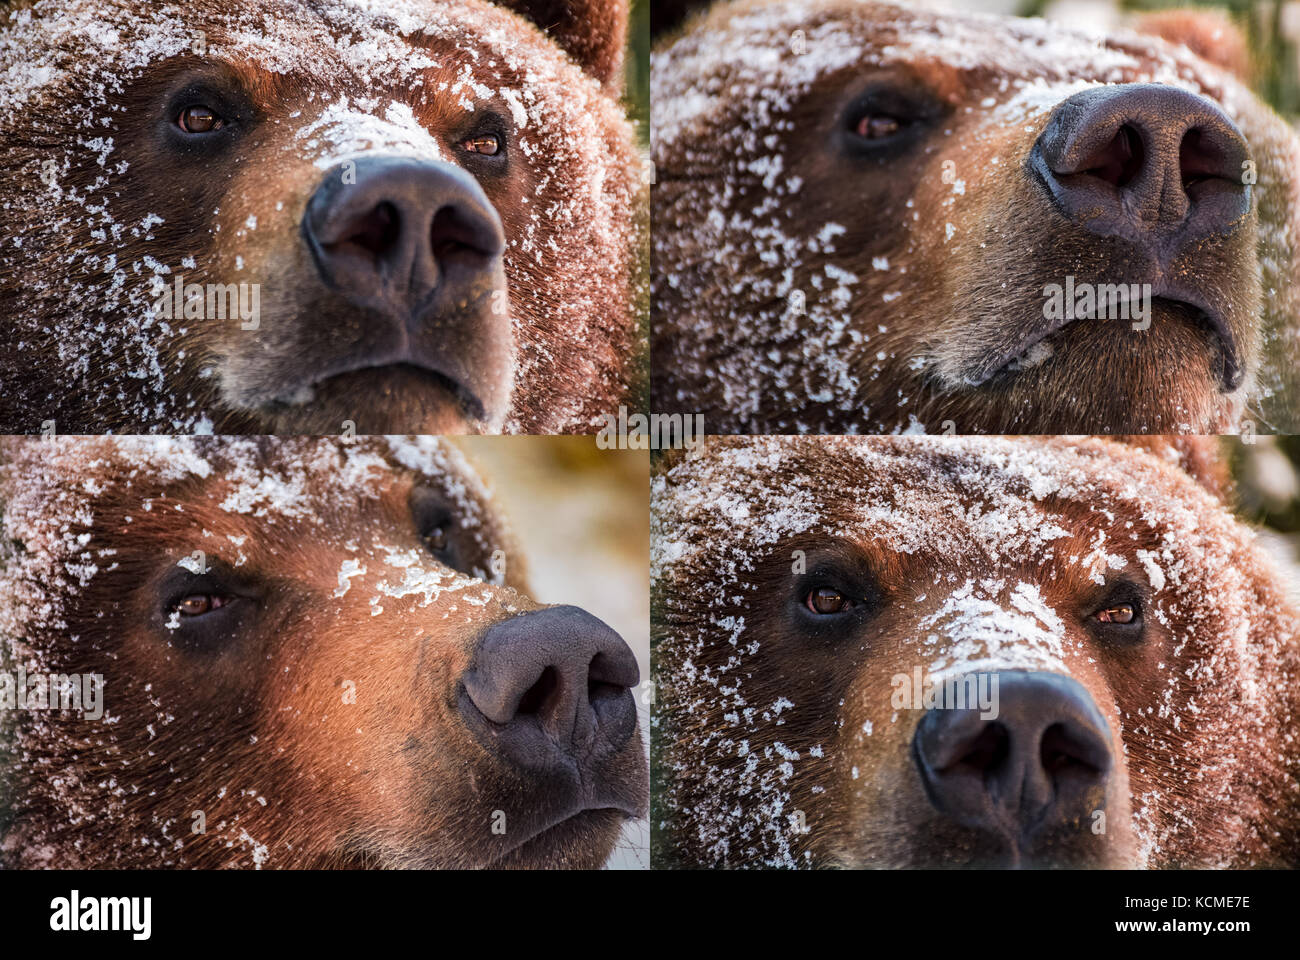 Emozioni collage di orso bruno museruola in neve. curioso, arrabbiato, fiero e scaltro look di un animale focus su gli occhi o il naso Foto Stock